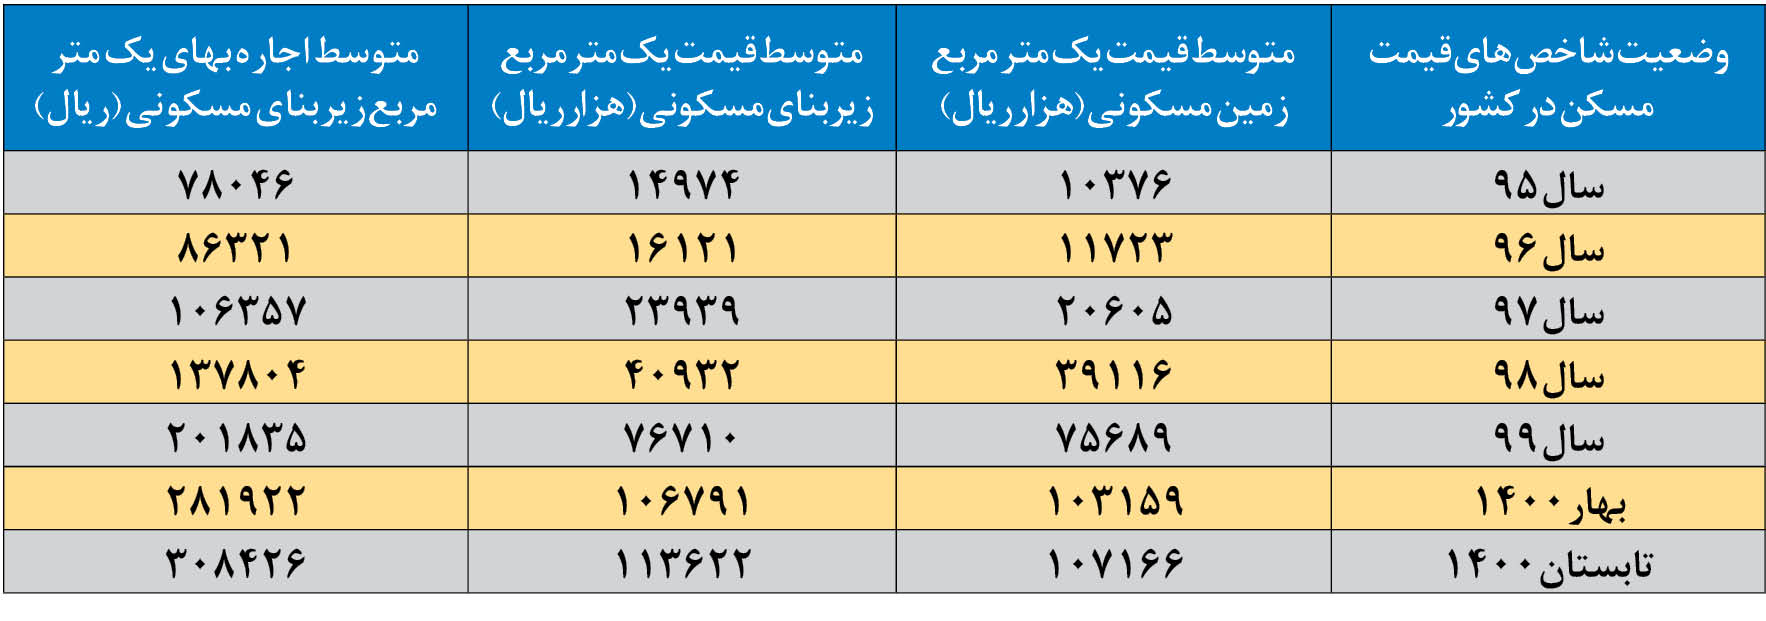 قیمت مسکن در تهران طی ۶ سال بیش از ۸ برابر شد